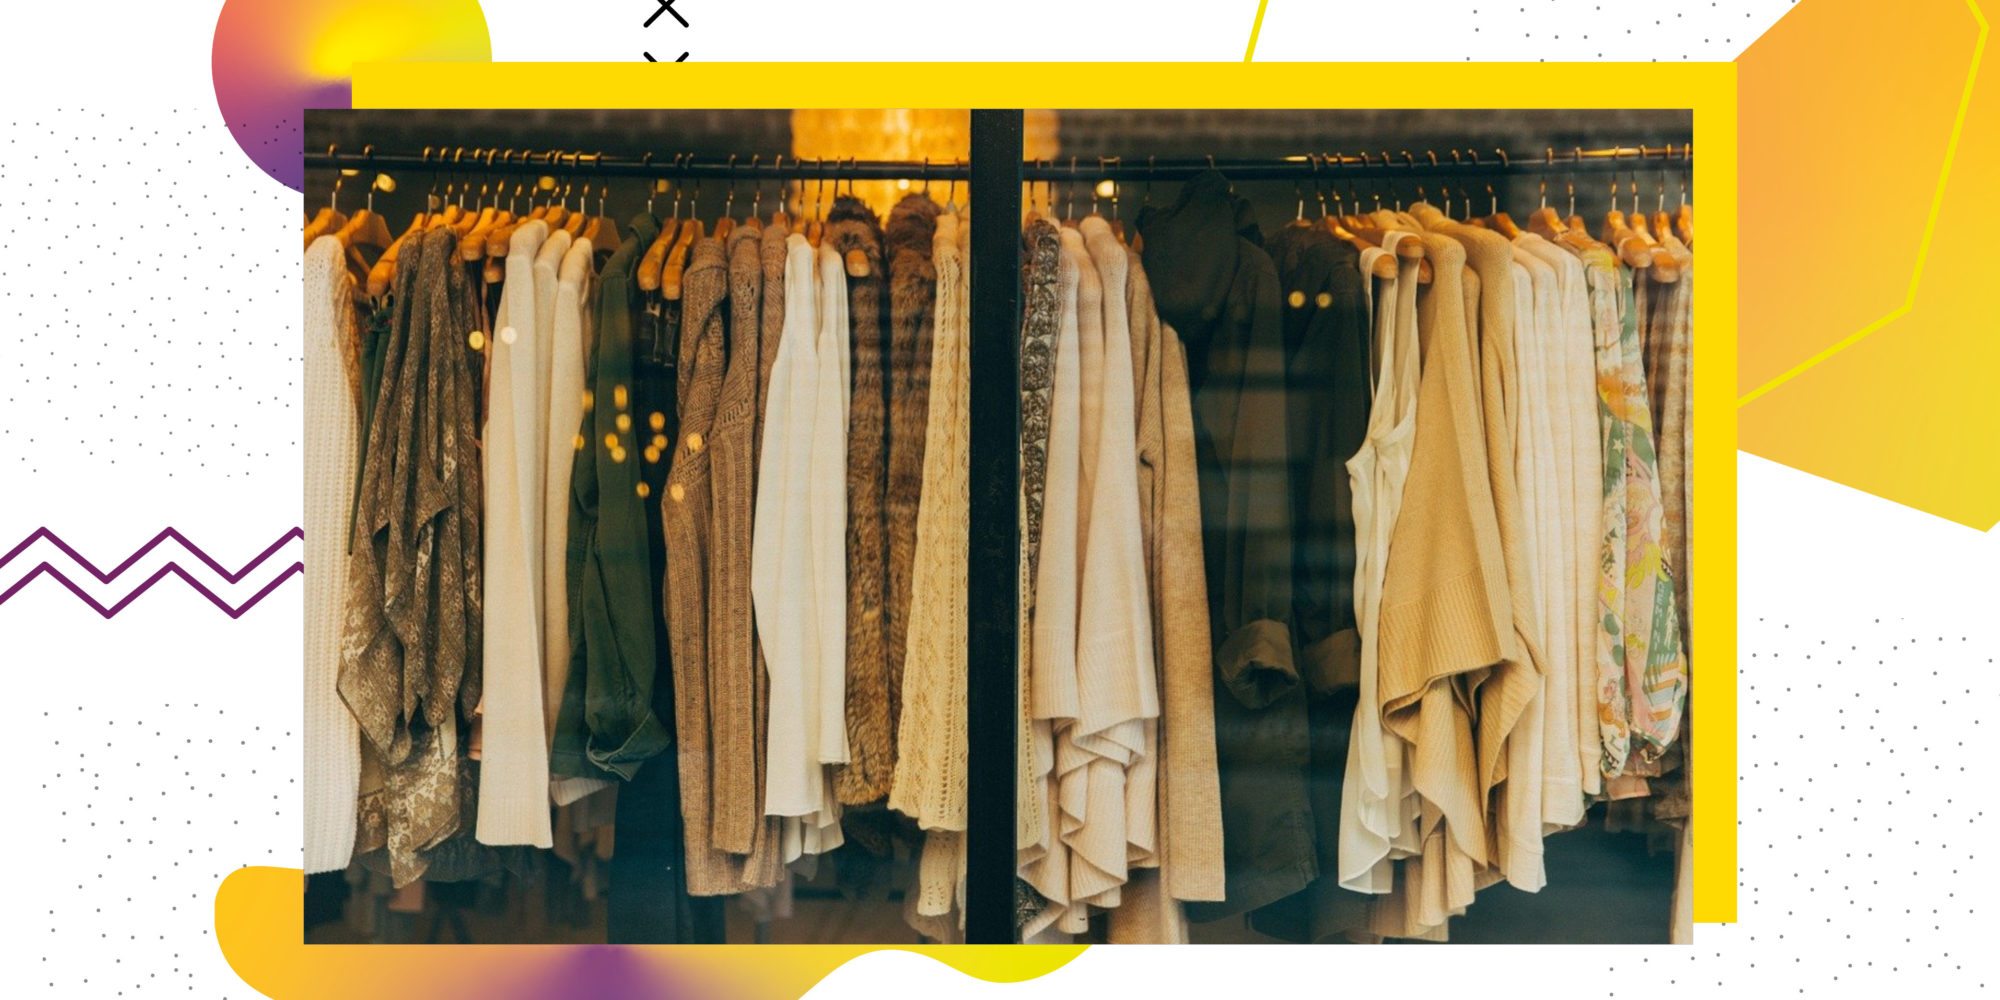 Schaufenster eines Geschäftes, in dem Kleidung in den Farben weiß, beige und dunkelgrün auf Kleiderständern aufgereiht sind